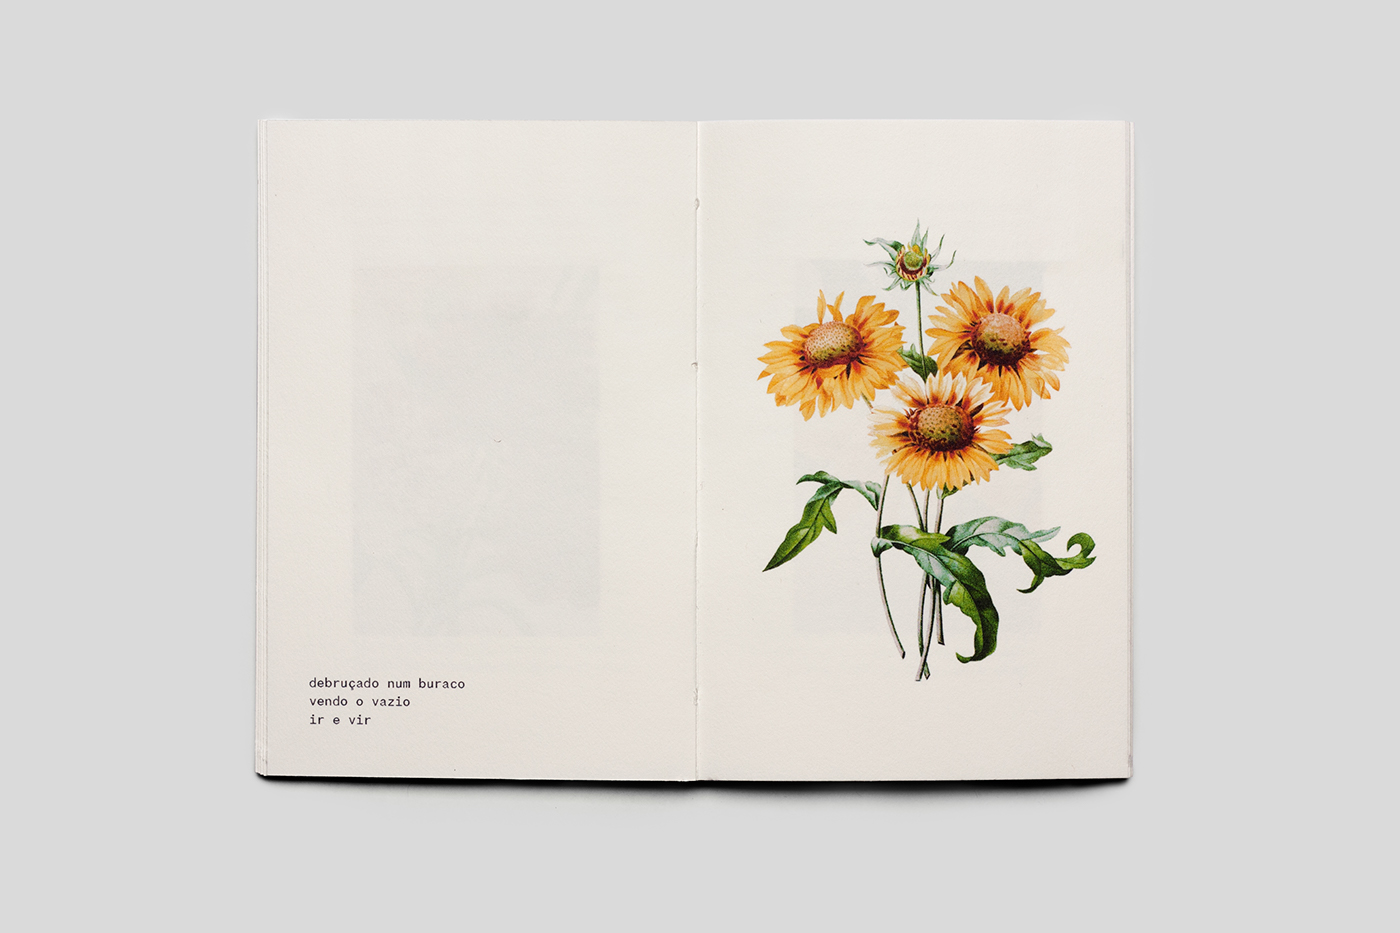 Flores + Haikus por Vitor de Carvalho